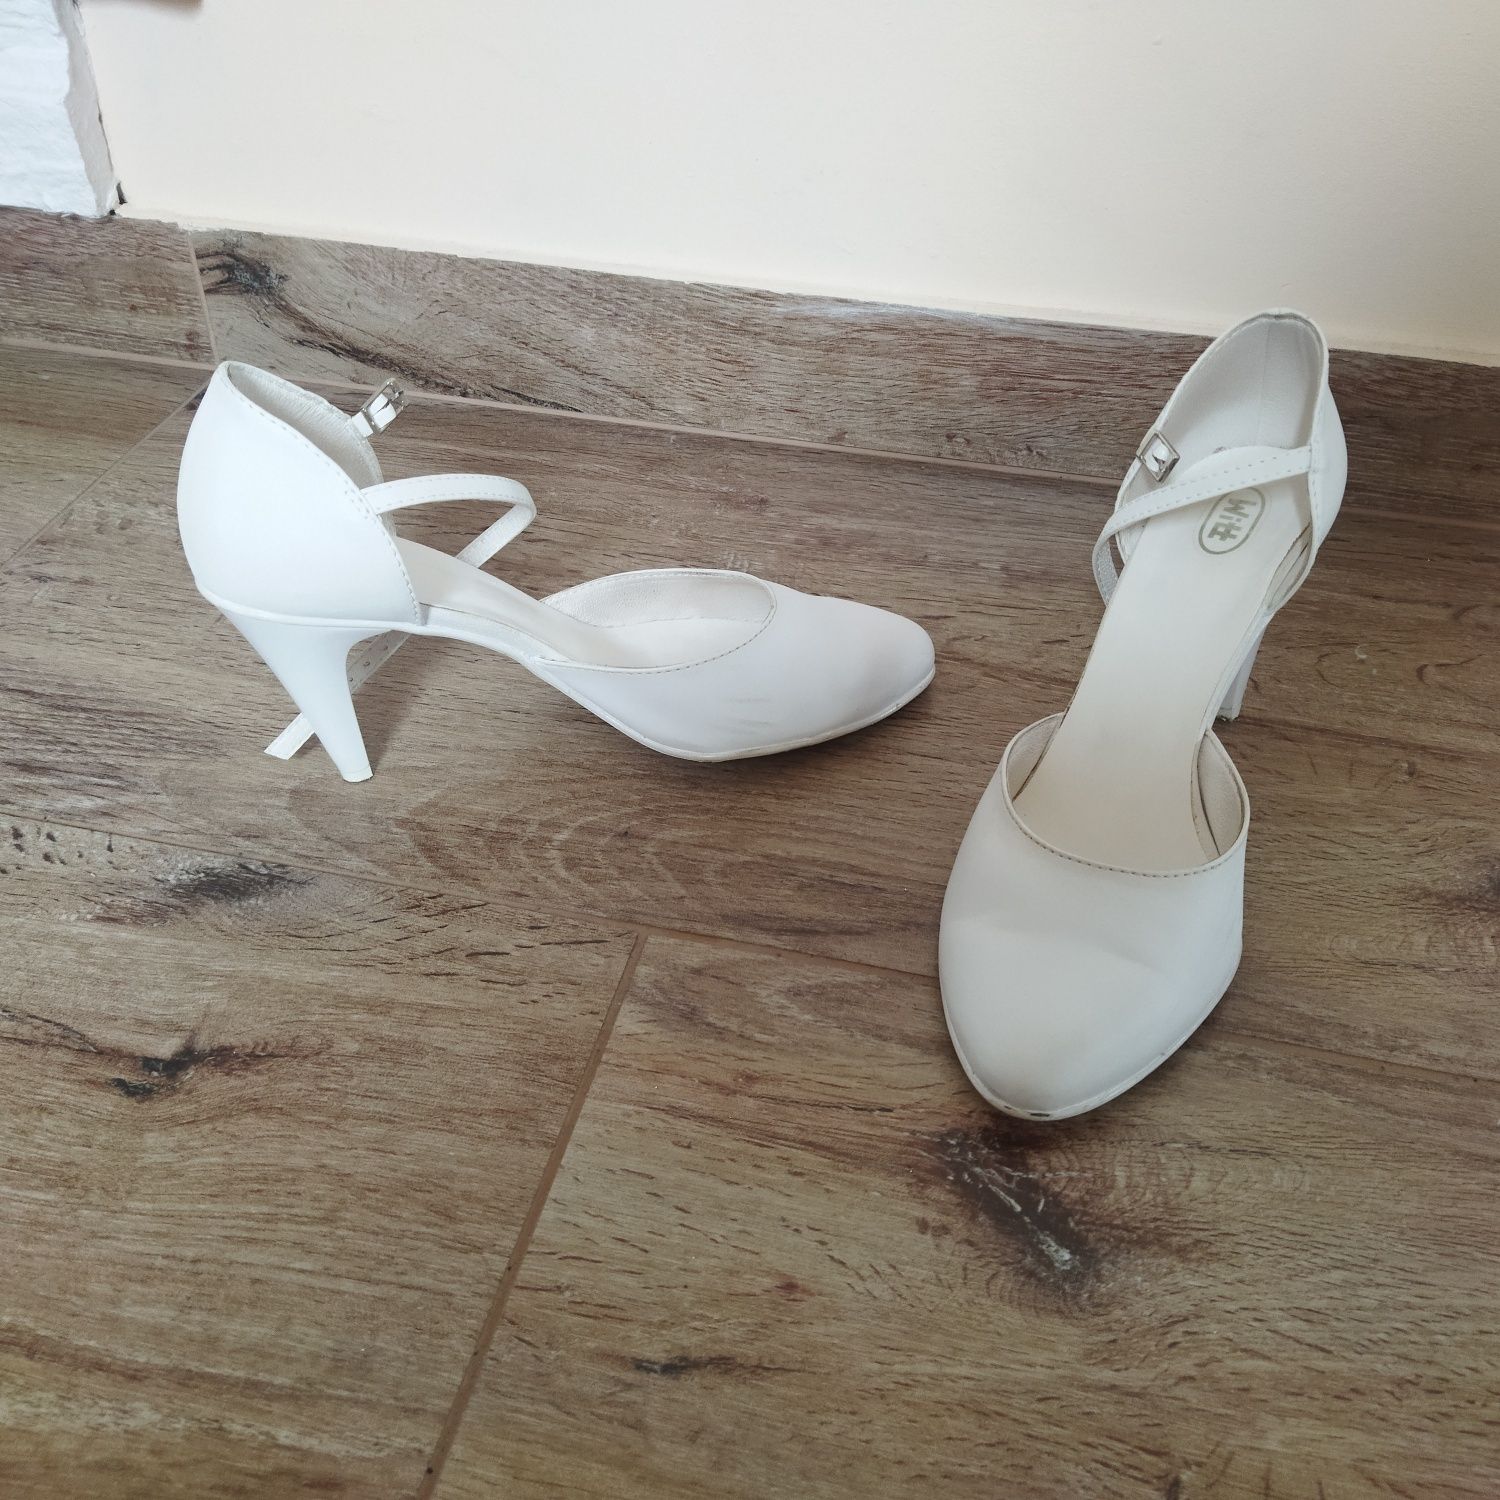 Buty ślubne białe buty buty do ślubu